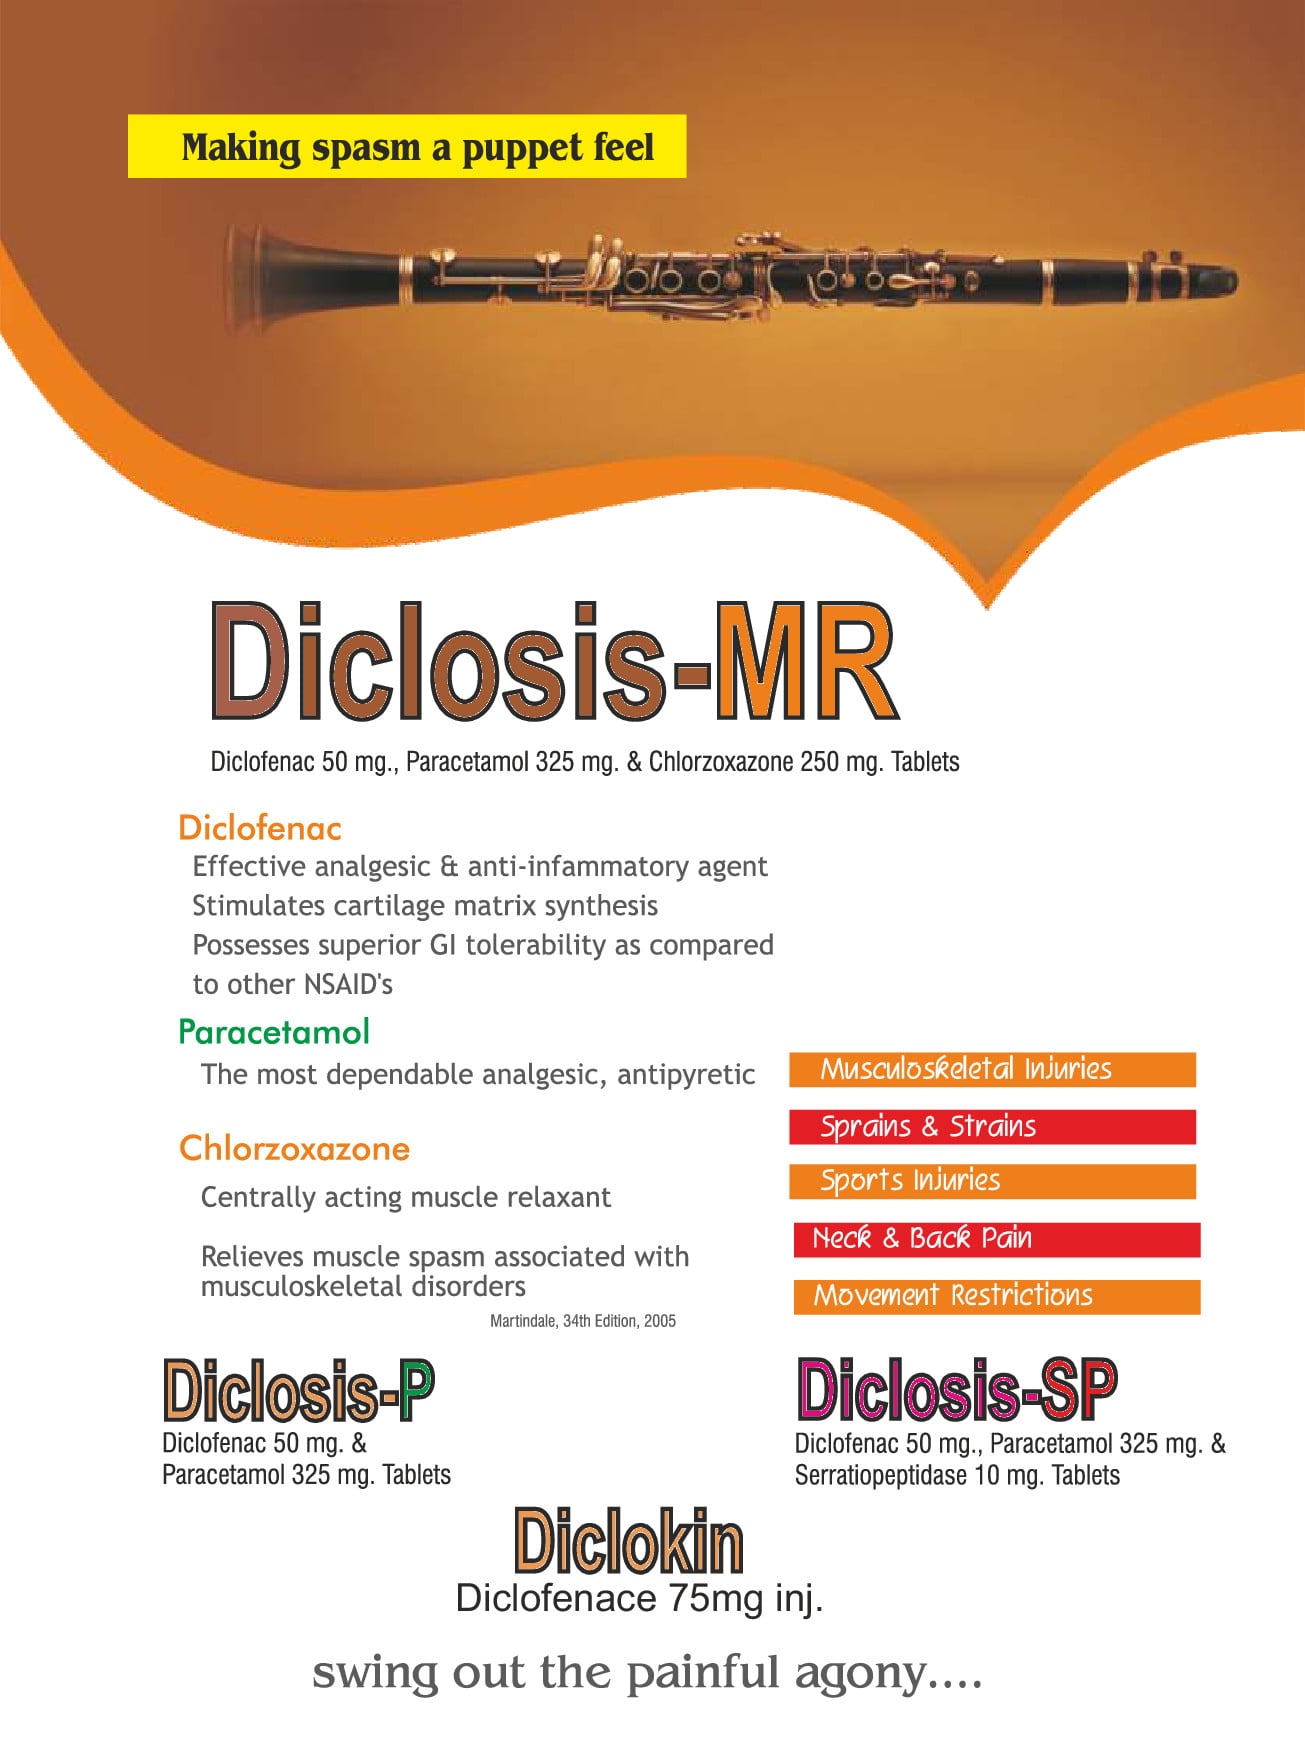 diclosis mr